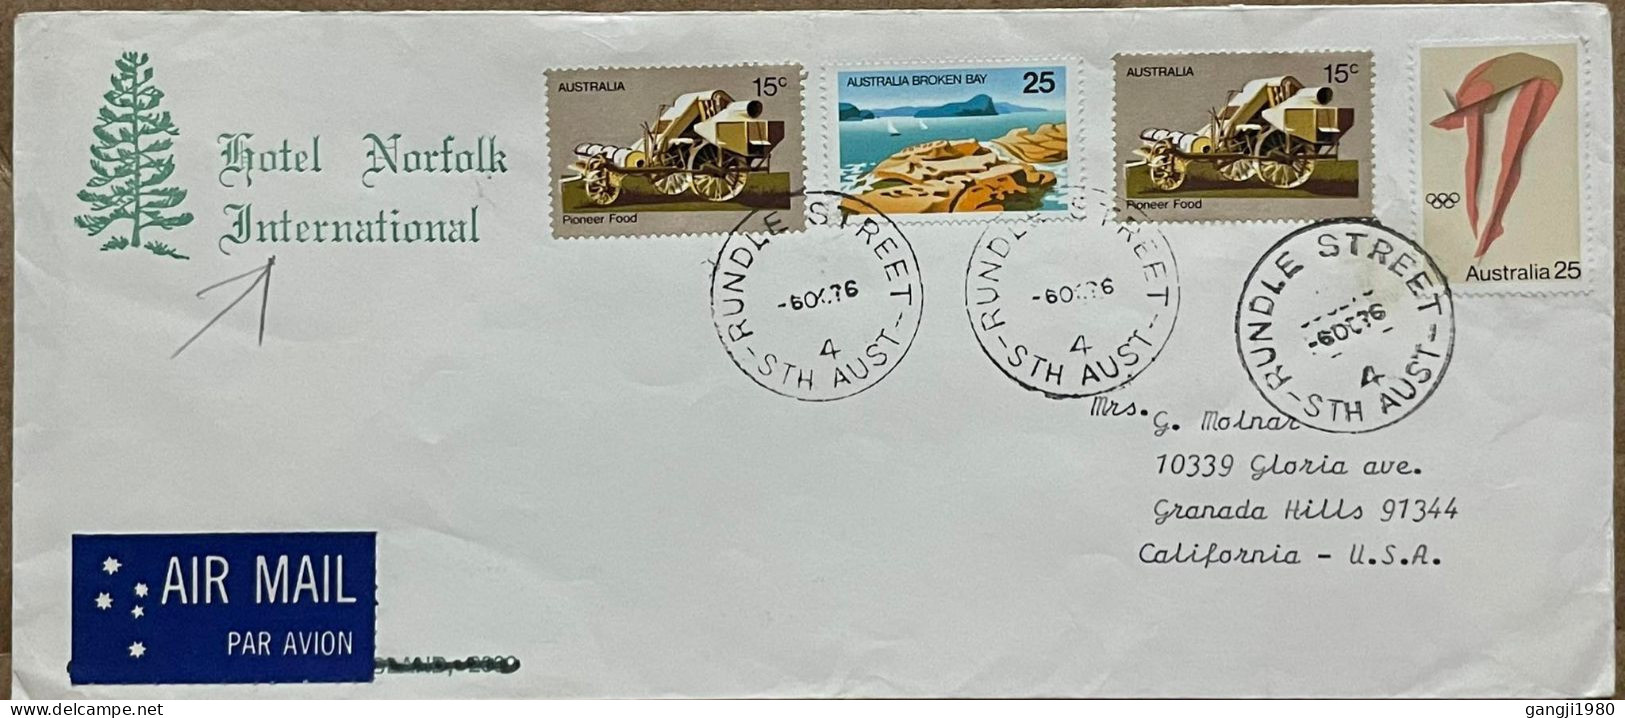 AUSTRALIA 1976, HOTEL NORFOLK ADVERTISING COVER, USED TO USA, PIONEER FOOD, BROKEN BAY, OLYMPIC GAME DIVING, 4 STAMP, RU - Briefe U. Dokumente